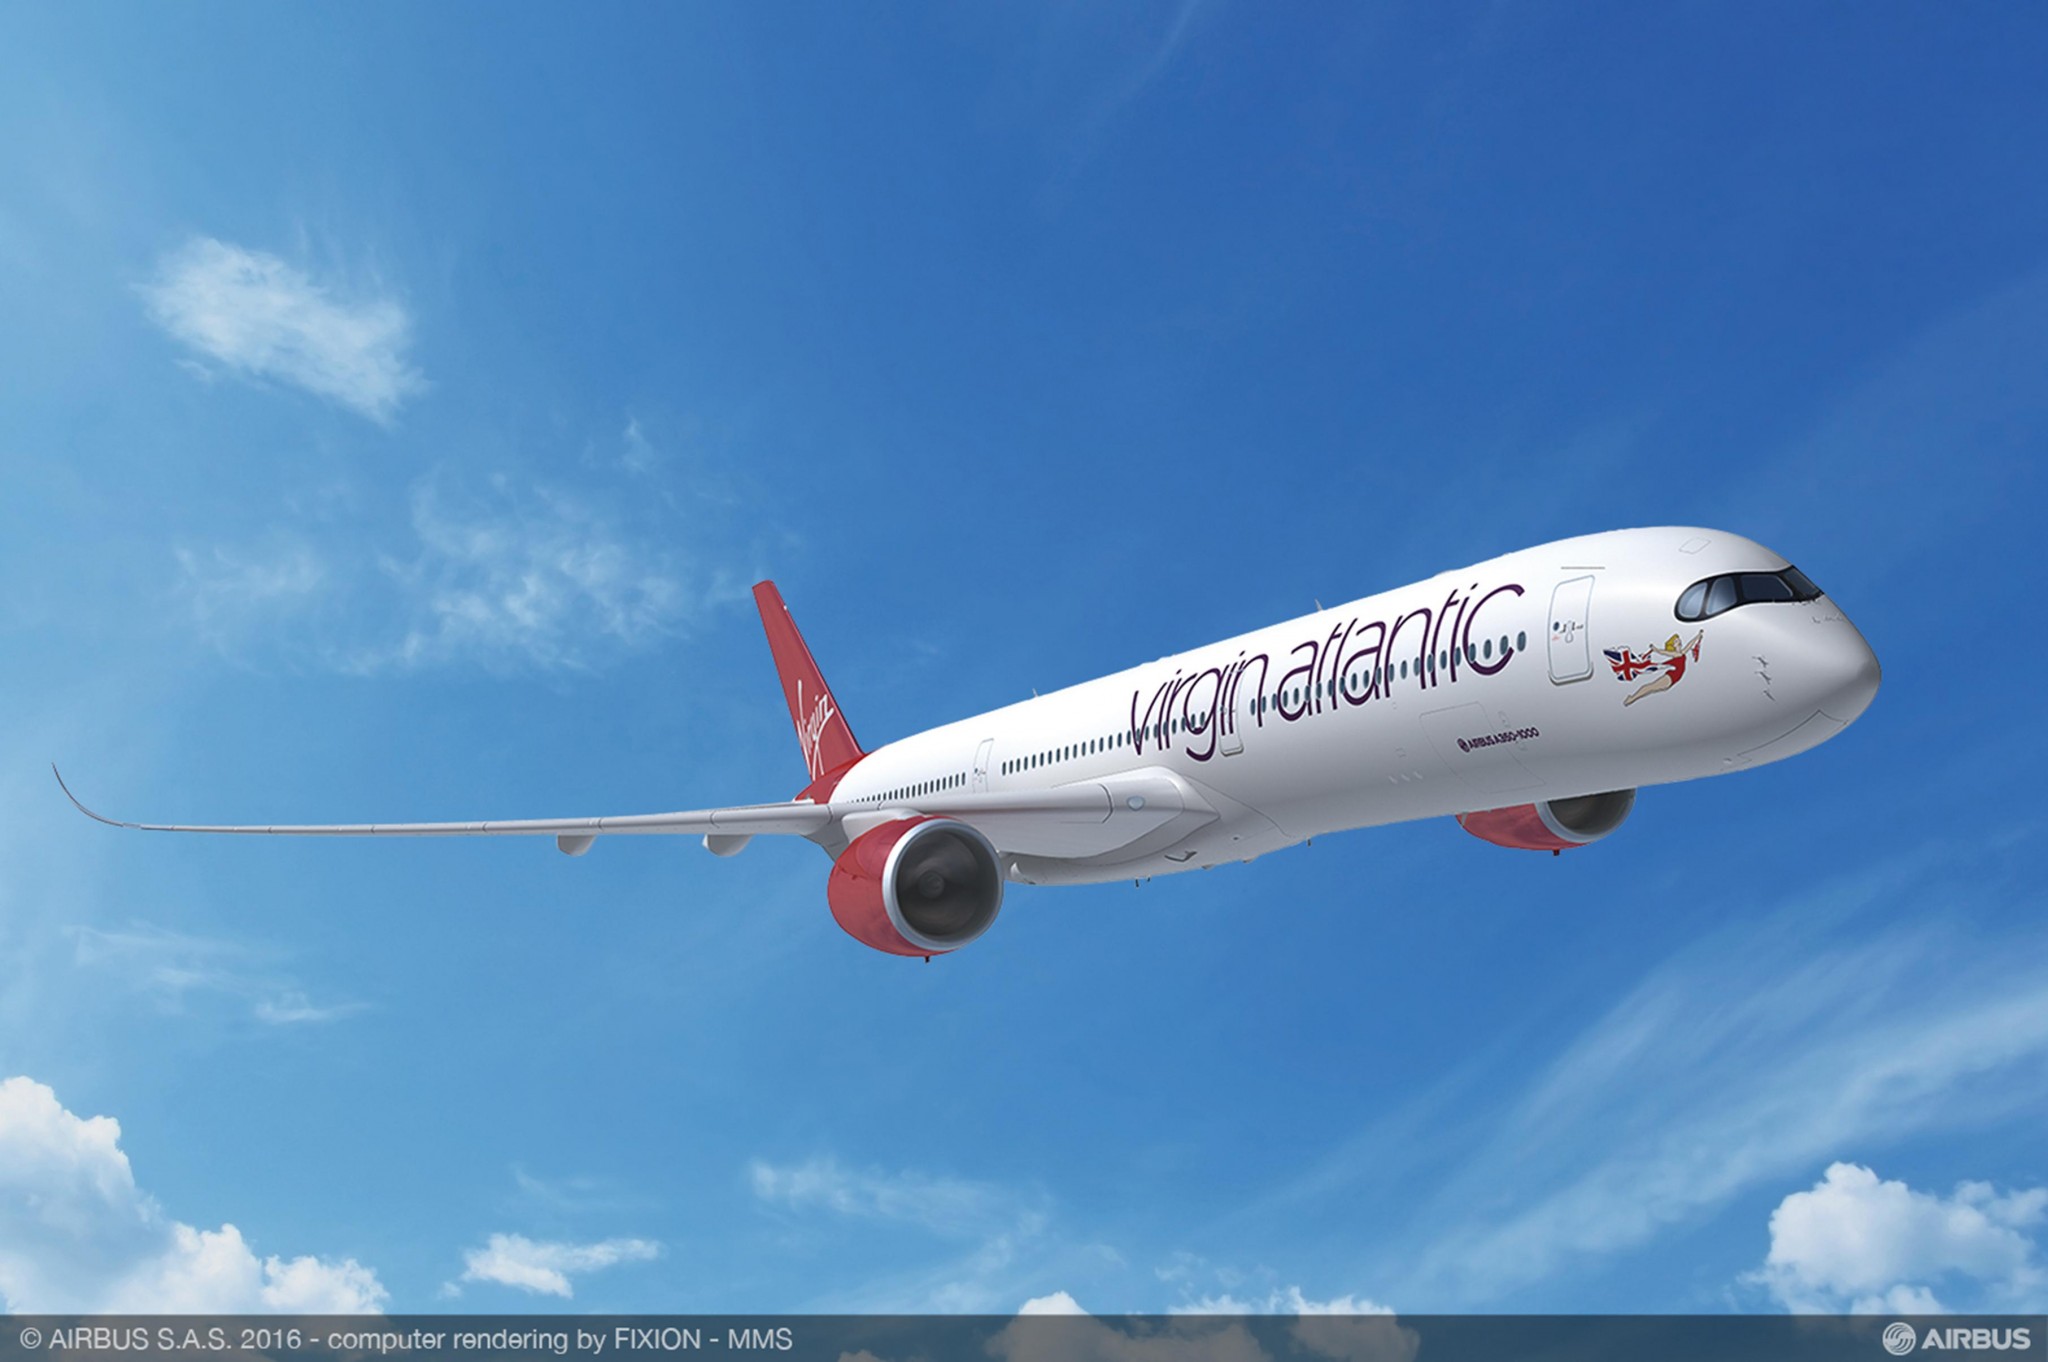 HAECO Xiamen performs A330-300 cabin reconfiguration for Virgin Atlantic